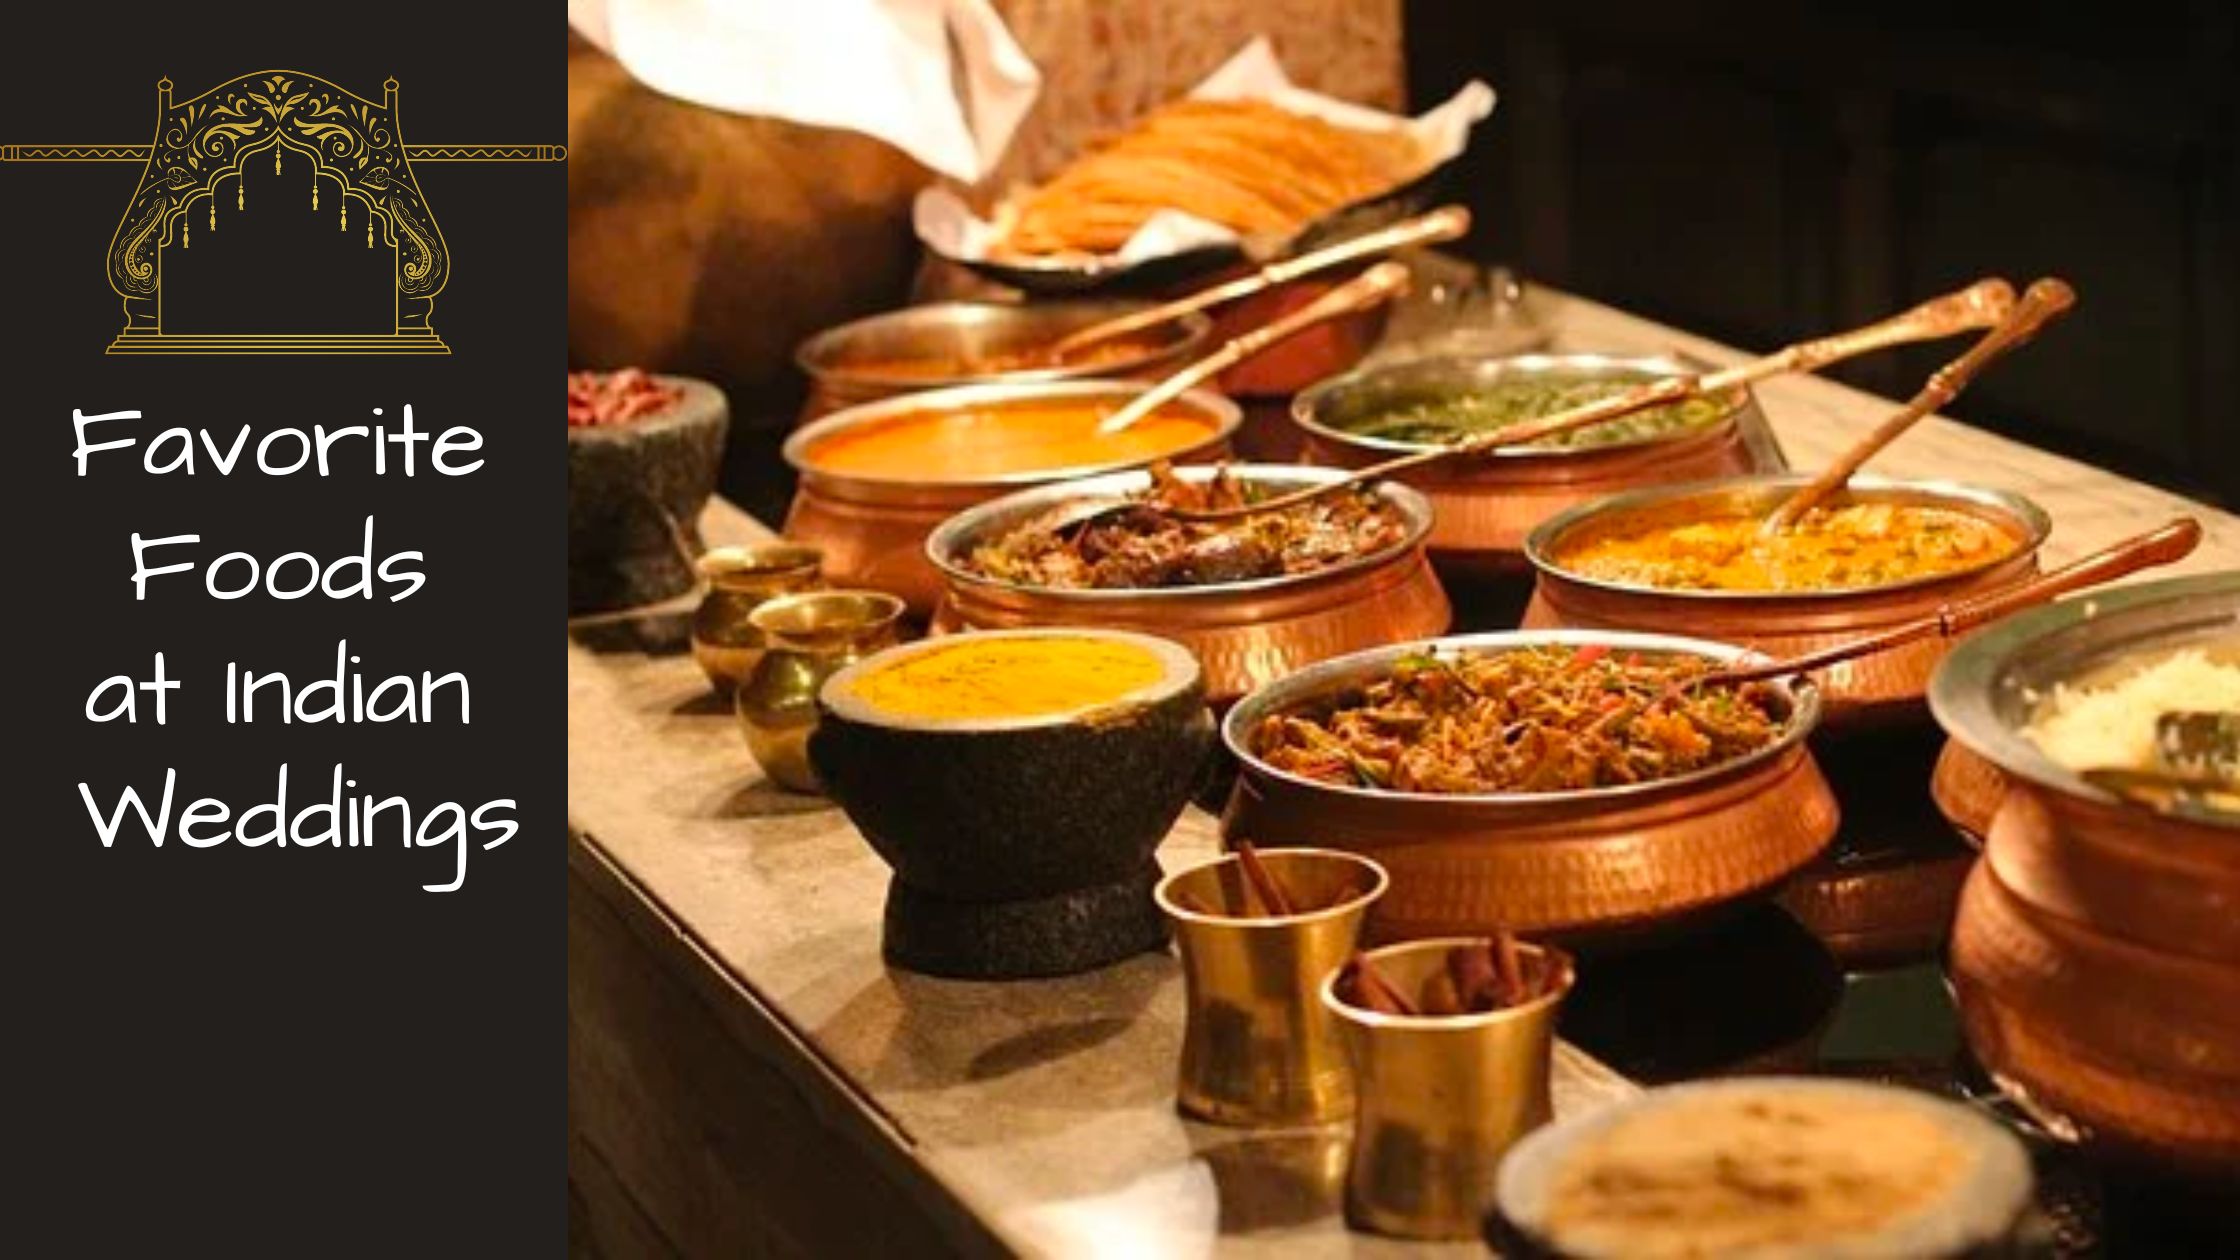 Favorite Foods at Indian Weddings